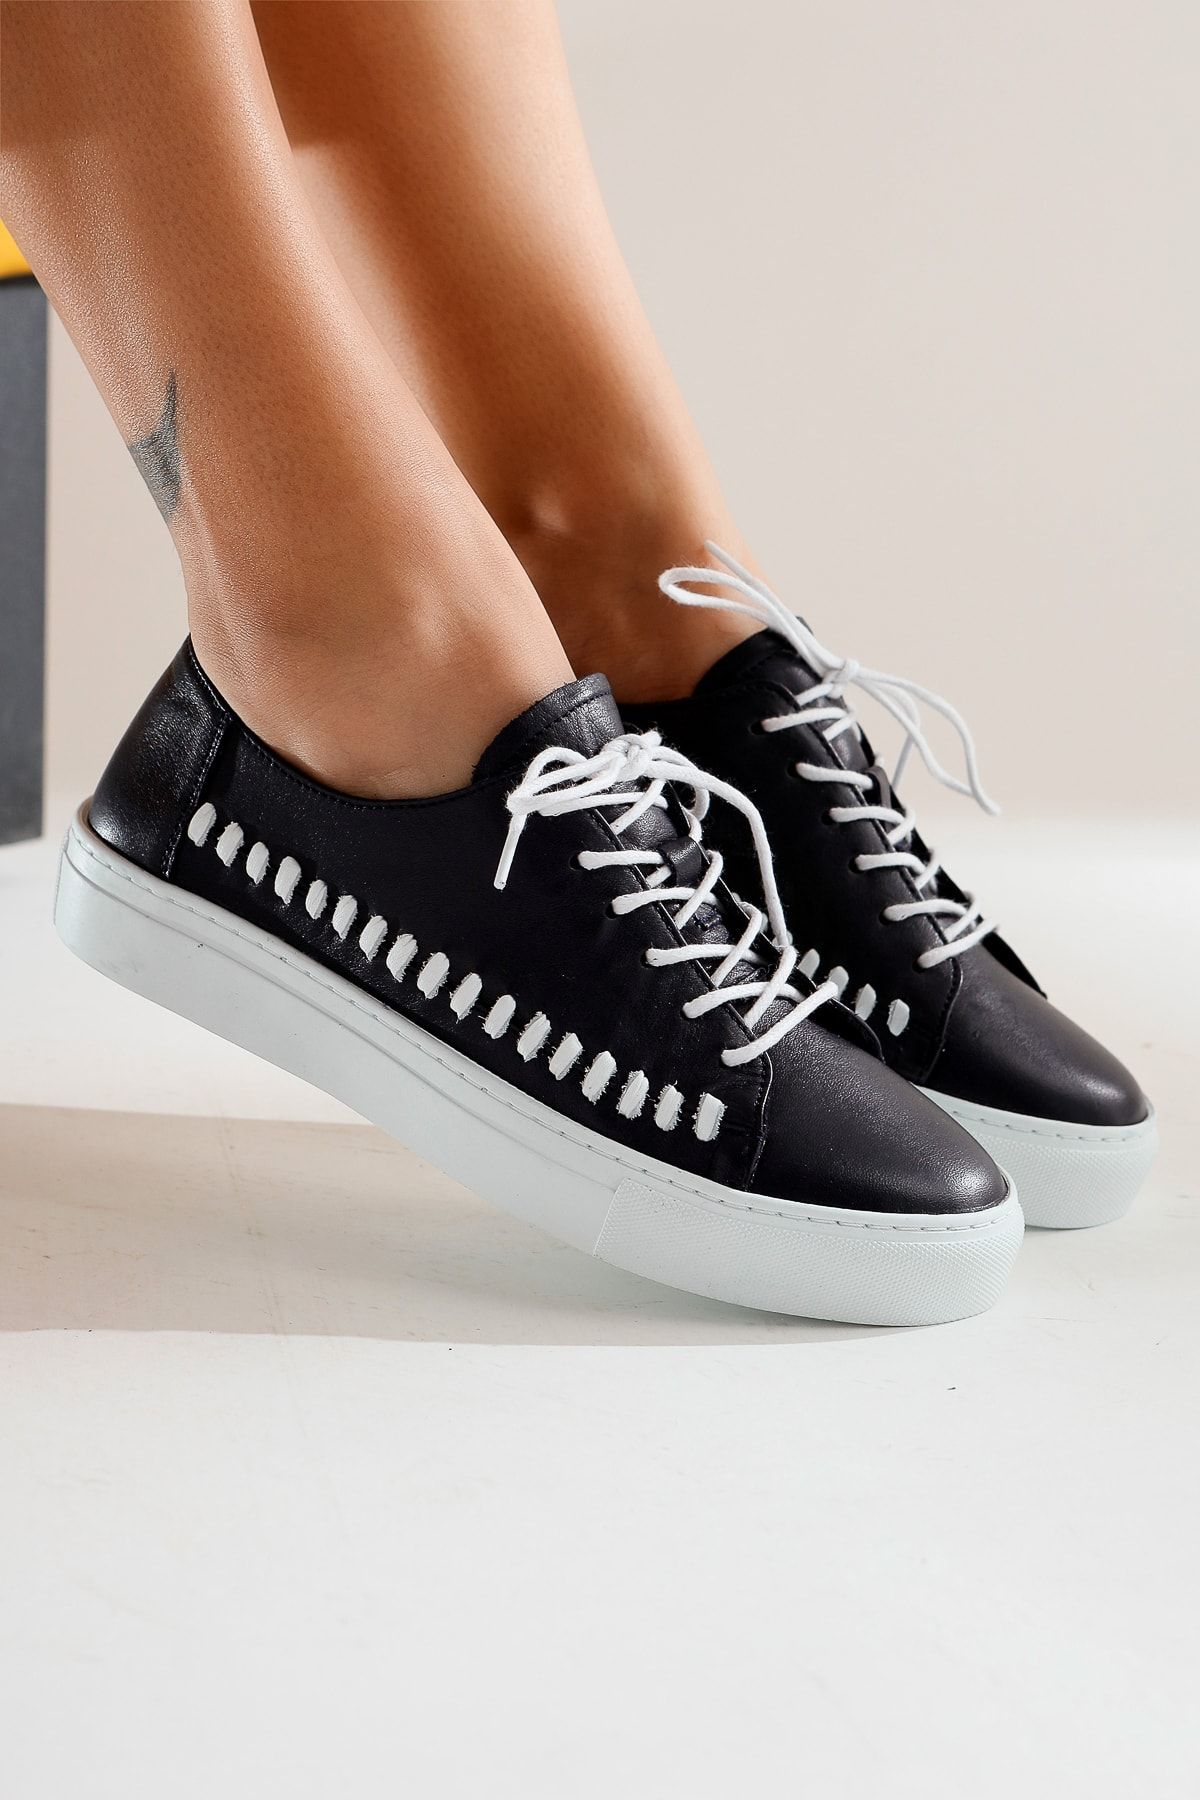 Limoya Hakiki Deri Esta Lacivert Bağcıklı Sneakers Spor Ayakkabı